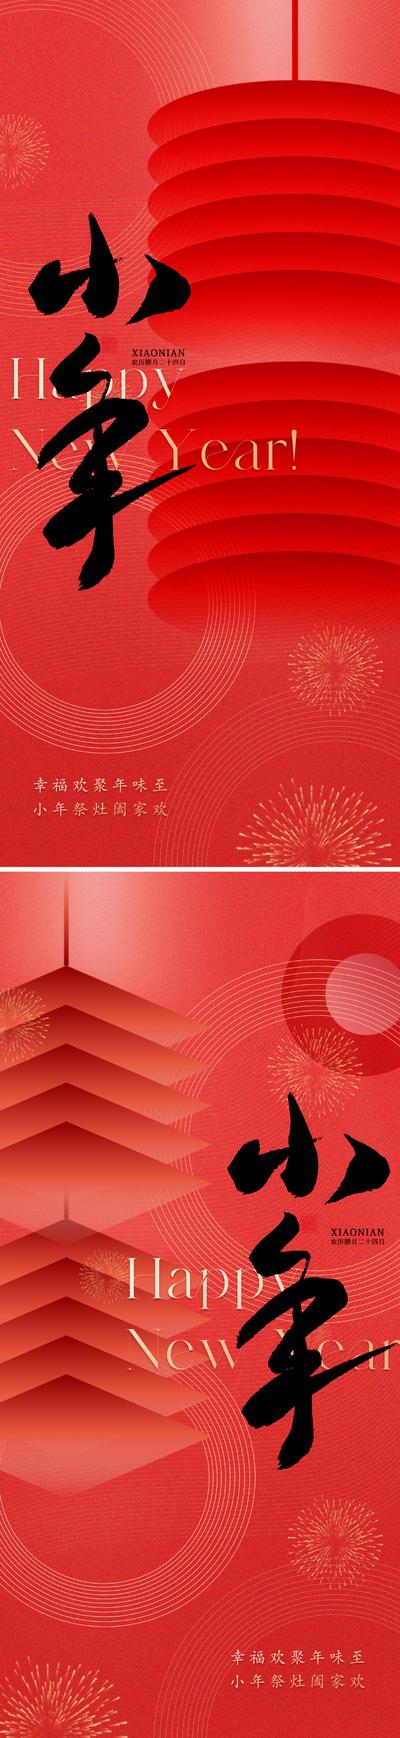 南门网 广告 海报 地产 小年 新年 春节 灯笼 系列 简约 品质